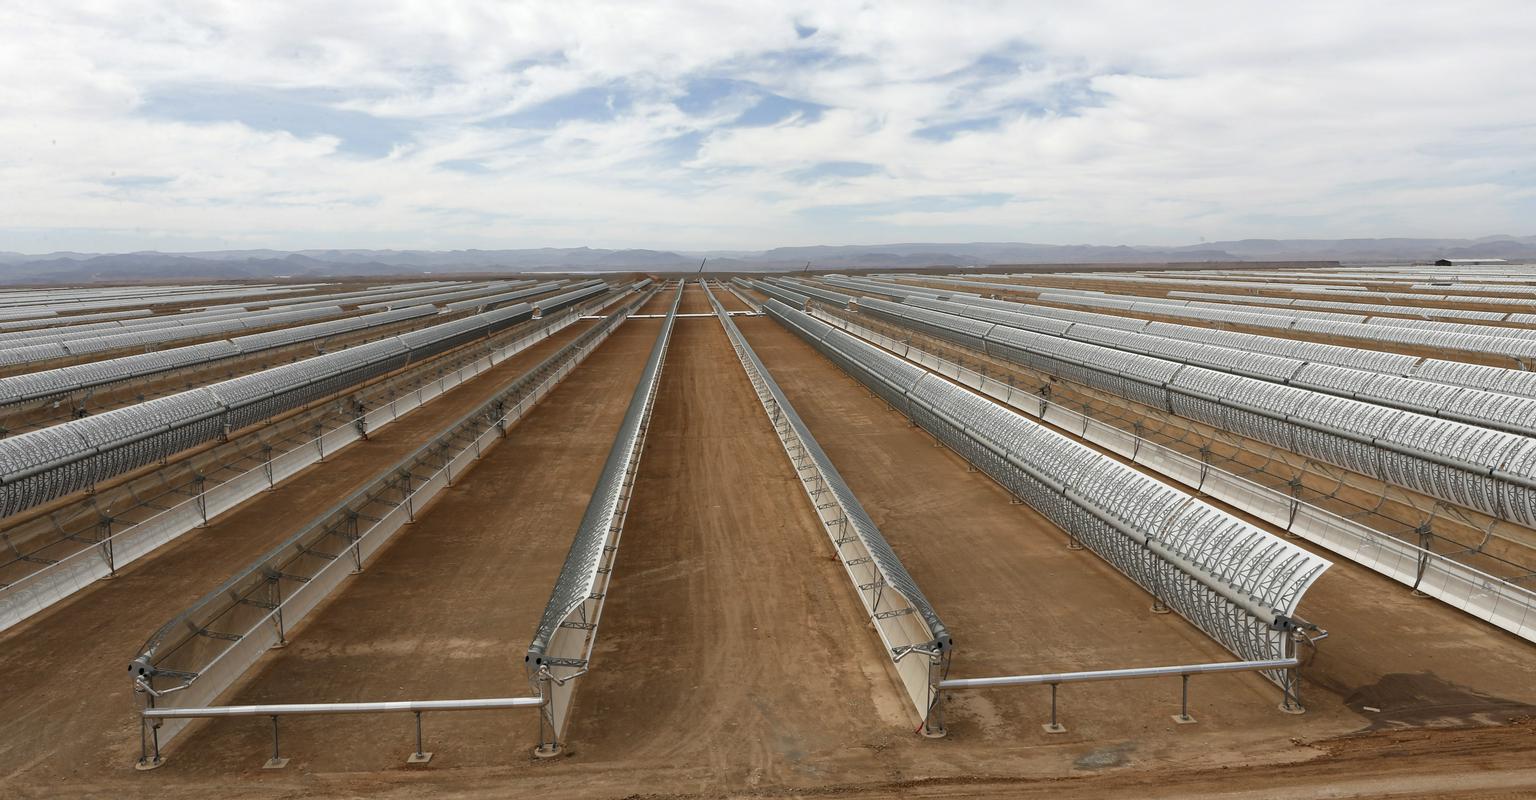 Maroko je ena od prvih držav, ki se je lotila tako obsežnega umeščanja koncentriranih sončnih elektrarn za proizvodnjo elektrike, s čimer želi biti zgled tudi drugim državam v severni Afriki. Foto: AP